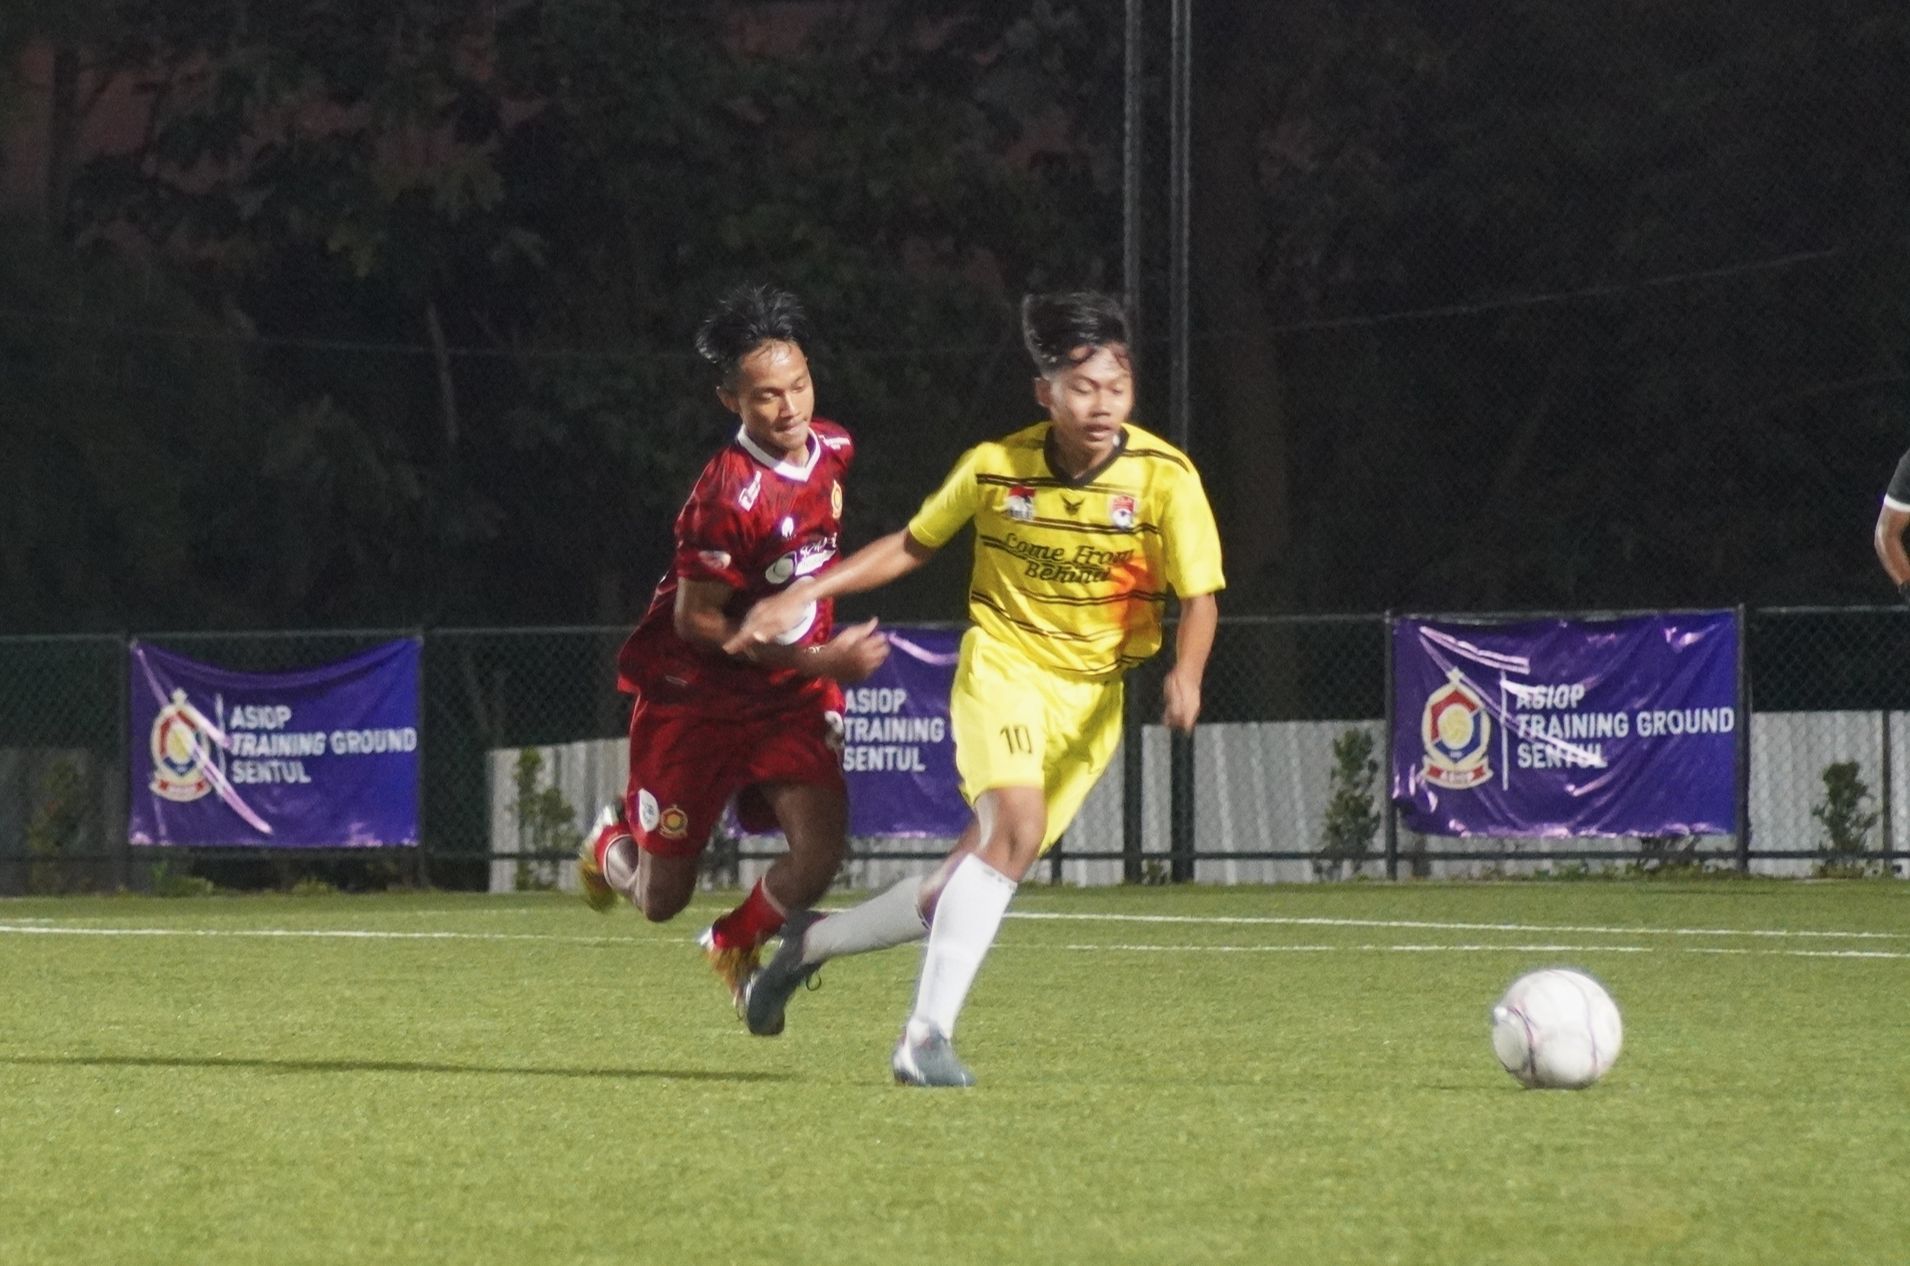 Laga final Liga TopSkor U-16 musim 2021-2022, Diklat ISA vs ASIOP.